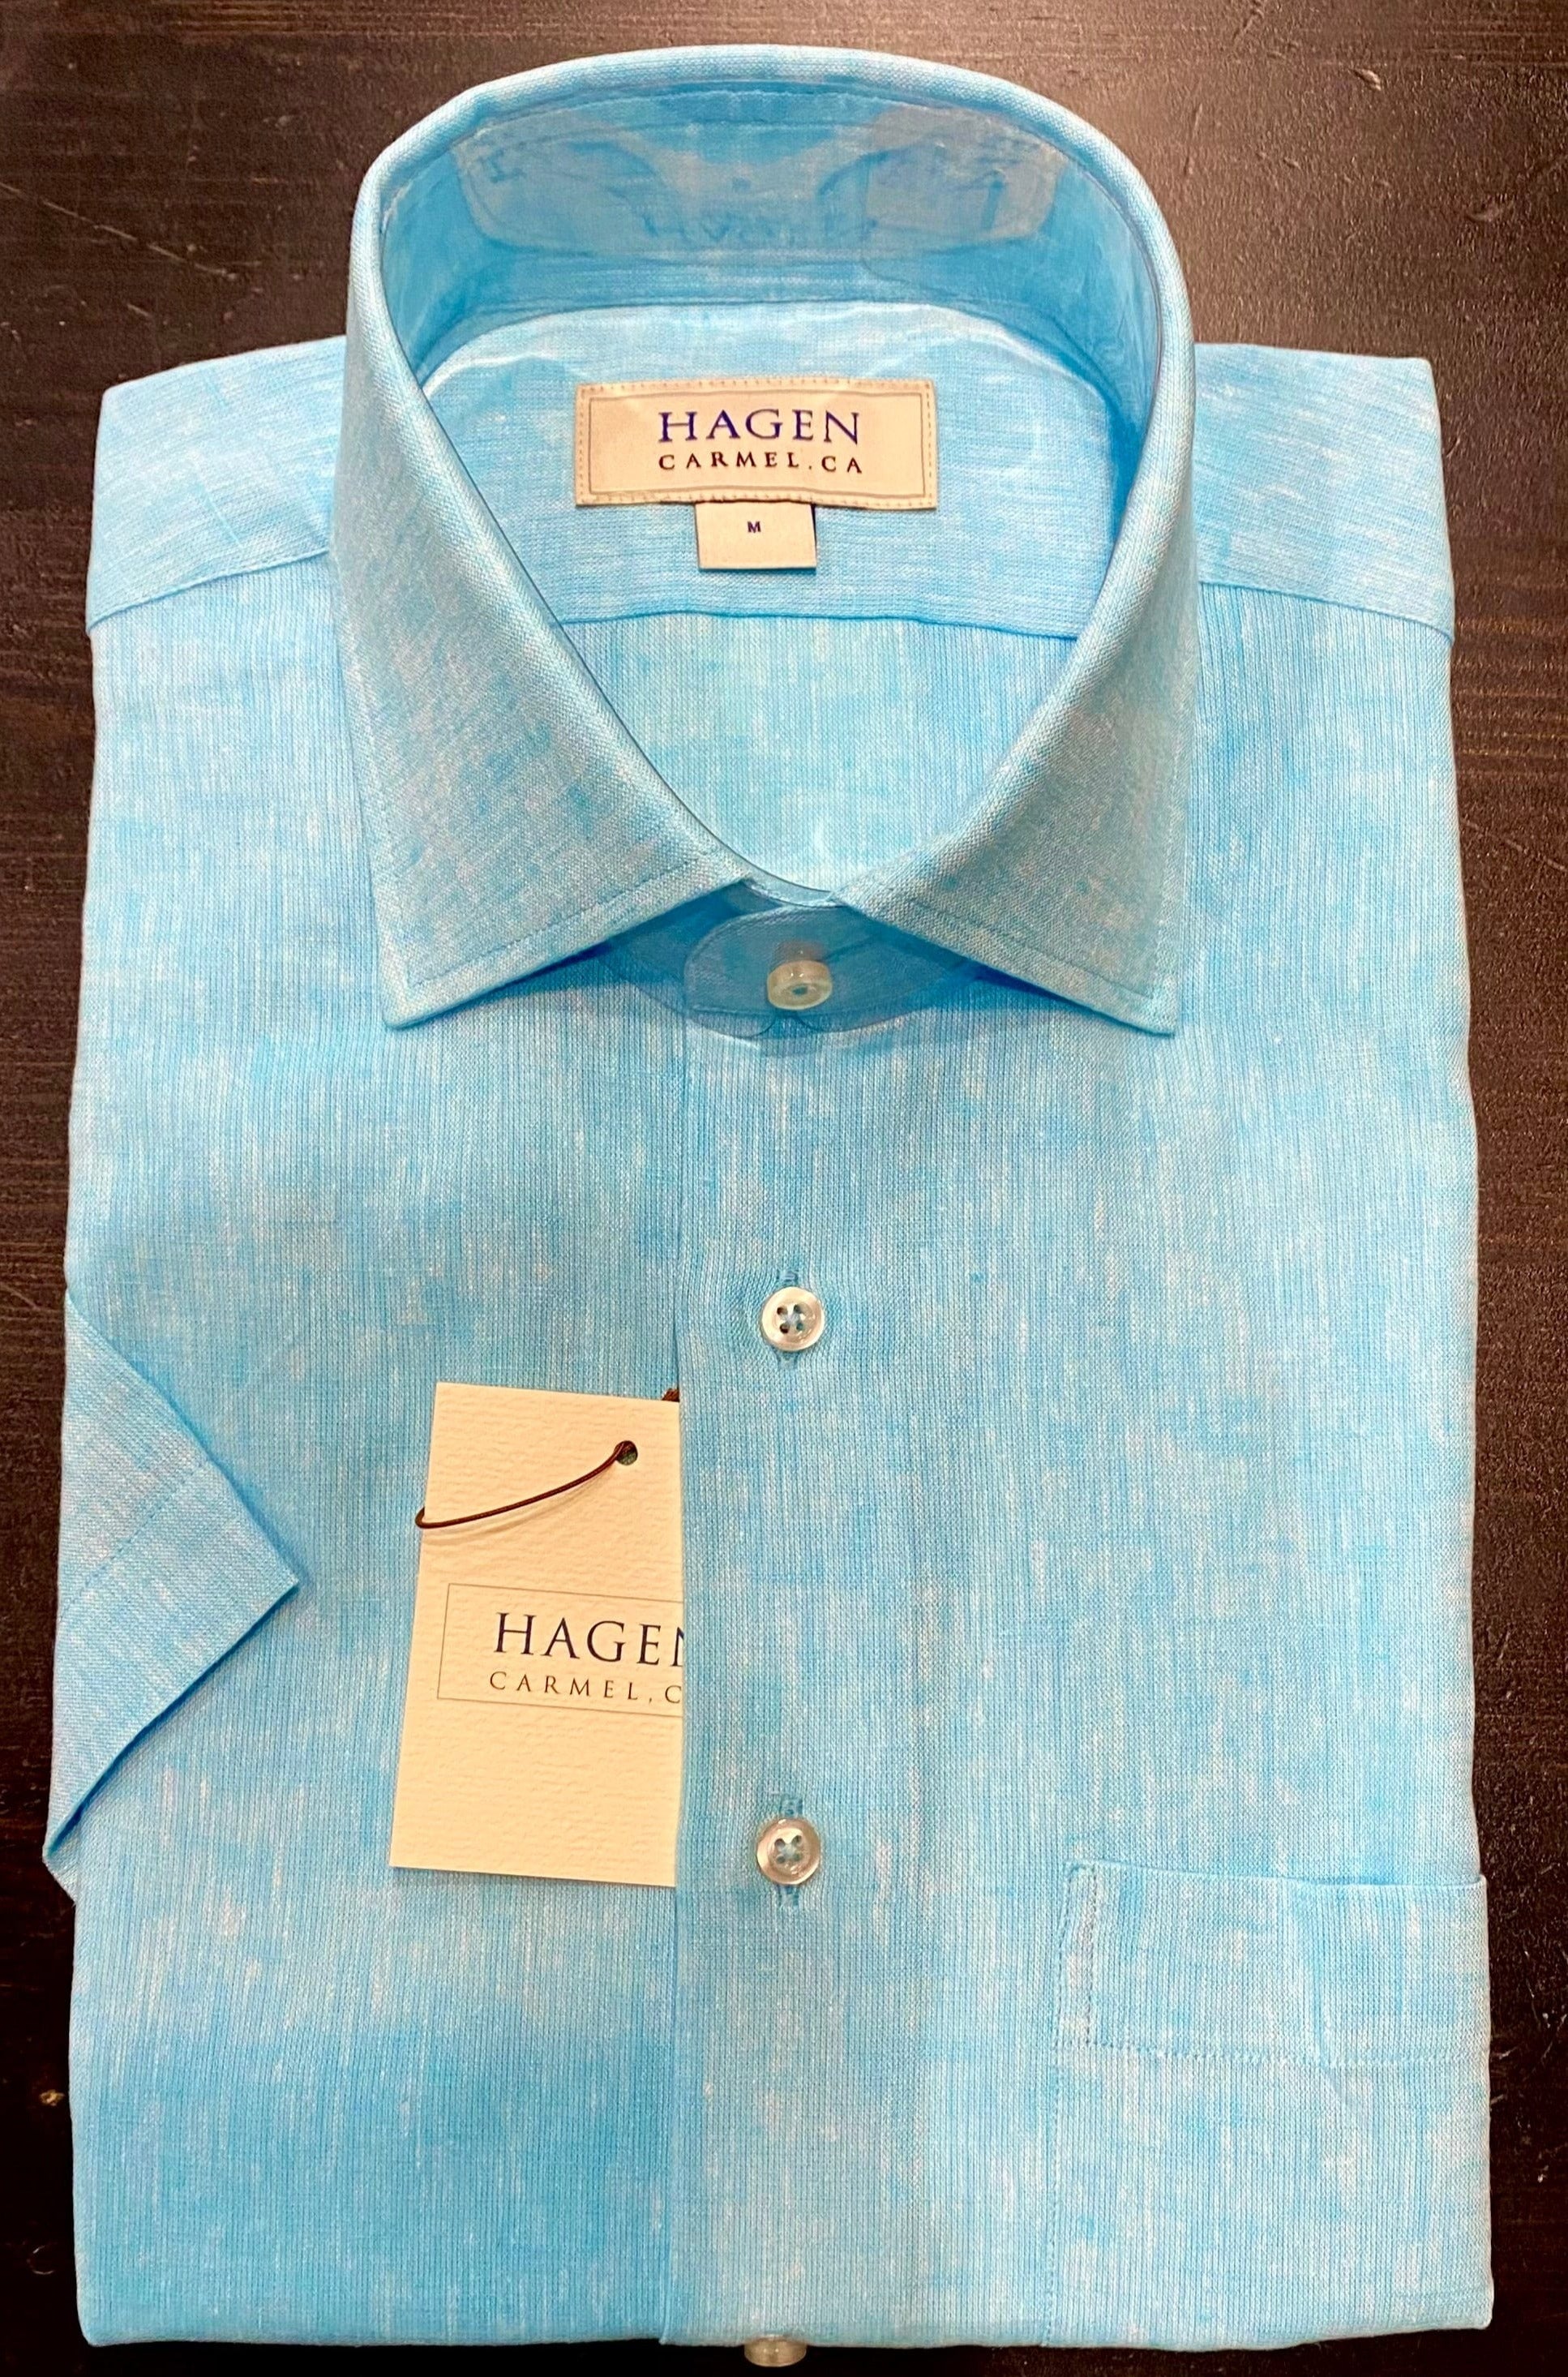 Hagen Carmel Men's Shirts Hagen of Carmel Teal Short Sleeve Shirt